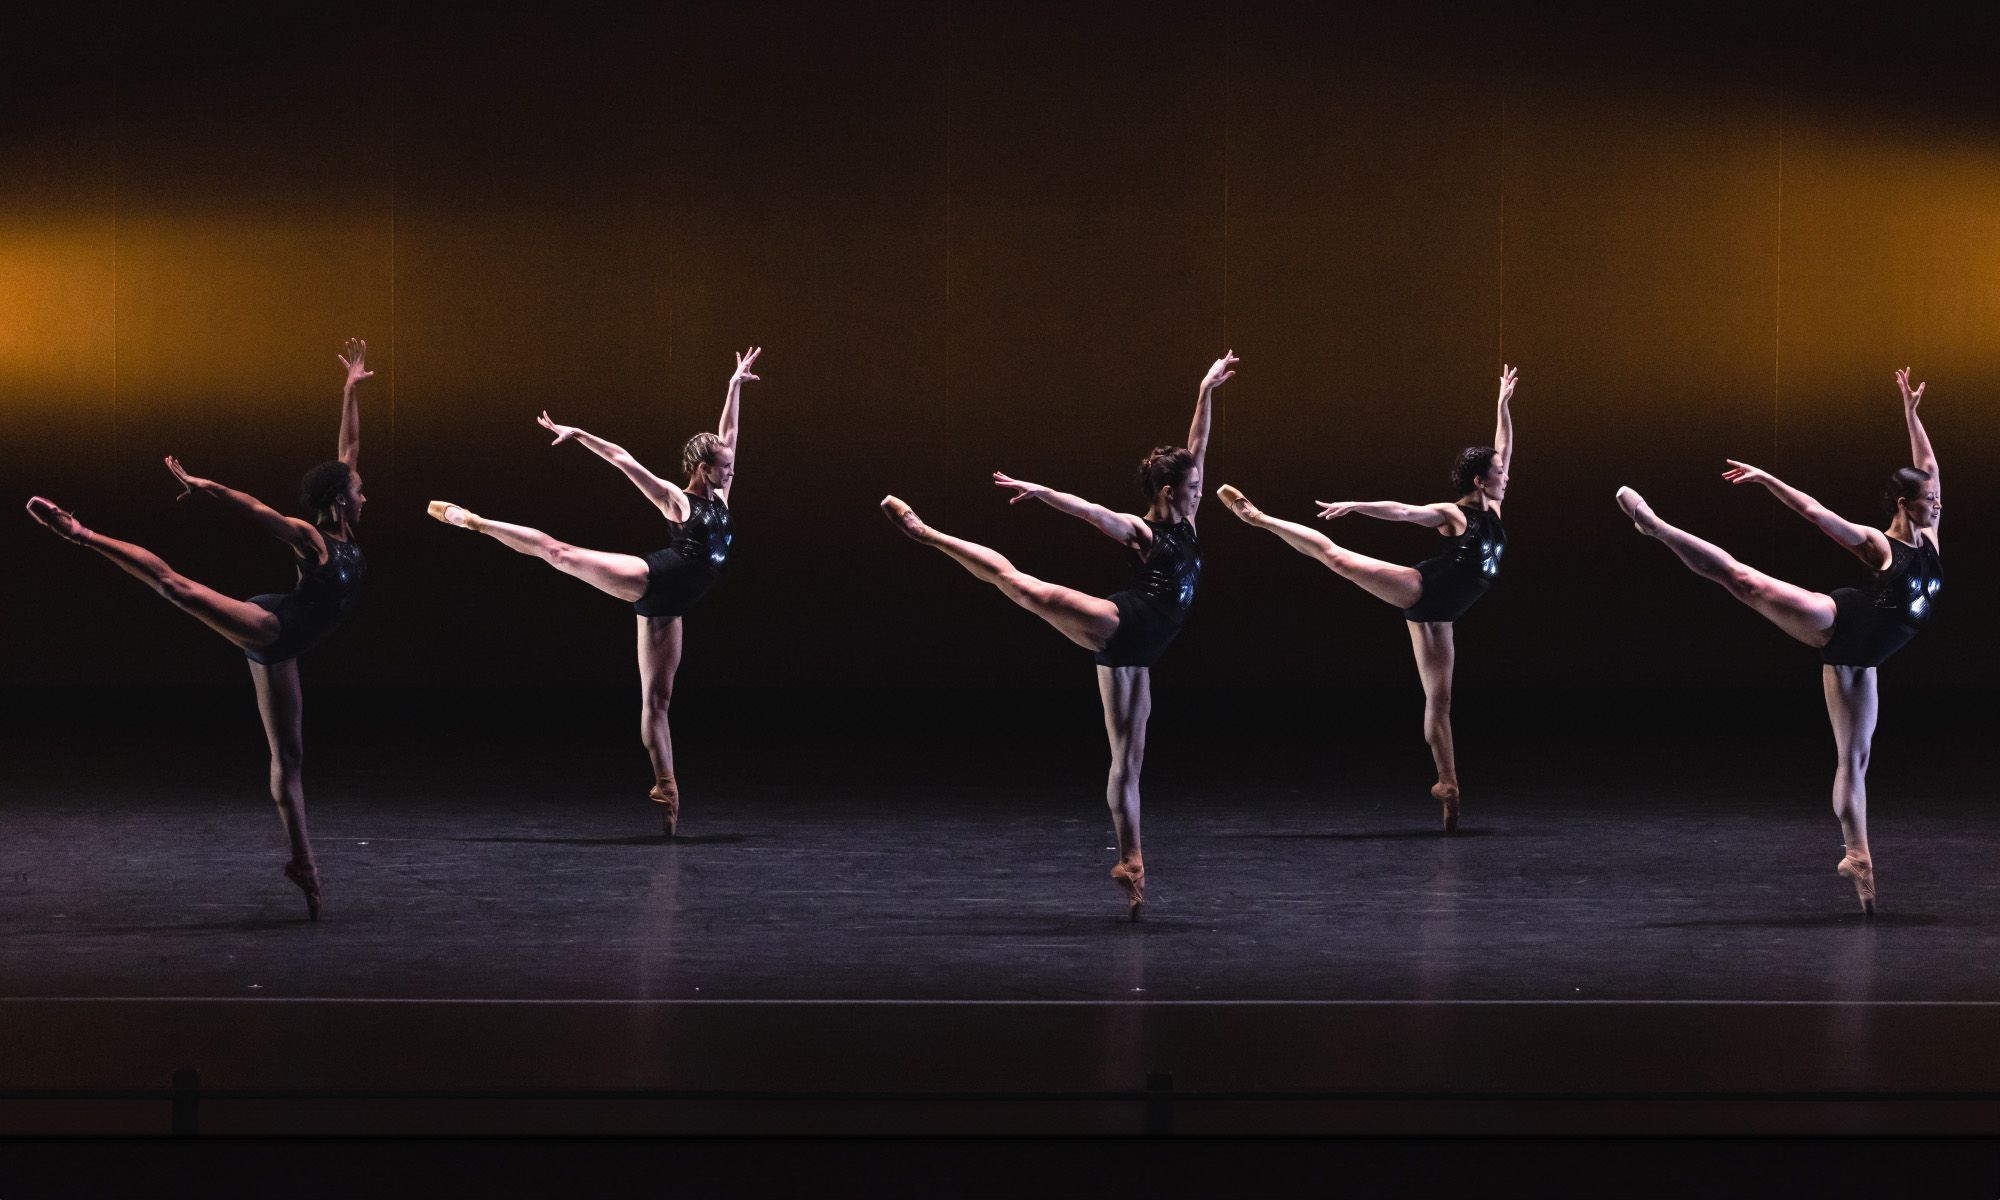 5 ballerinas on stage